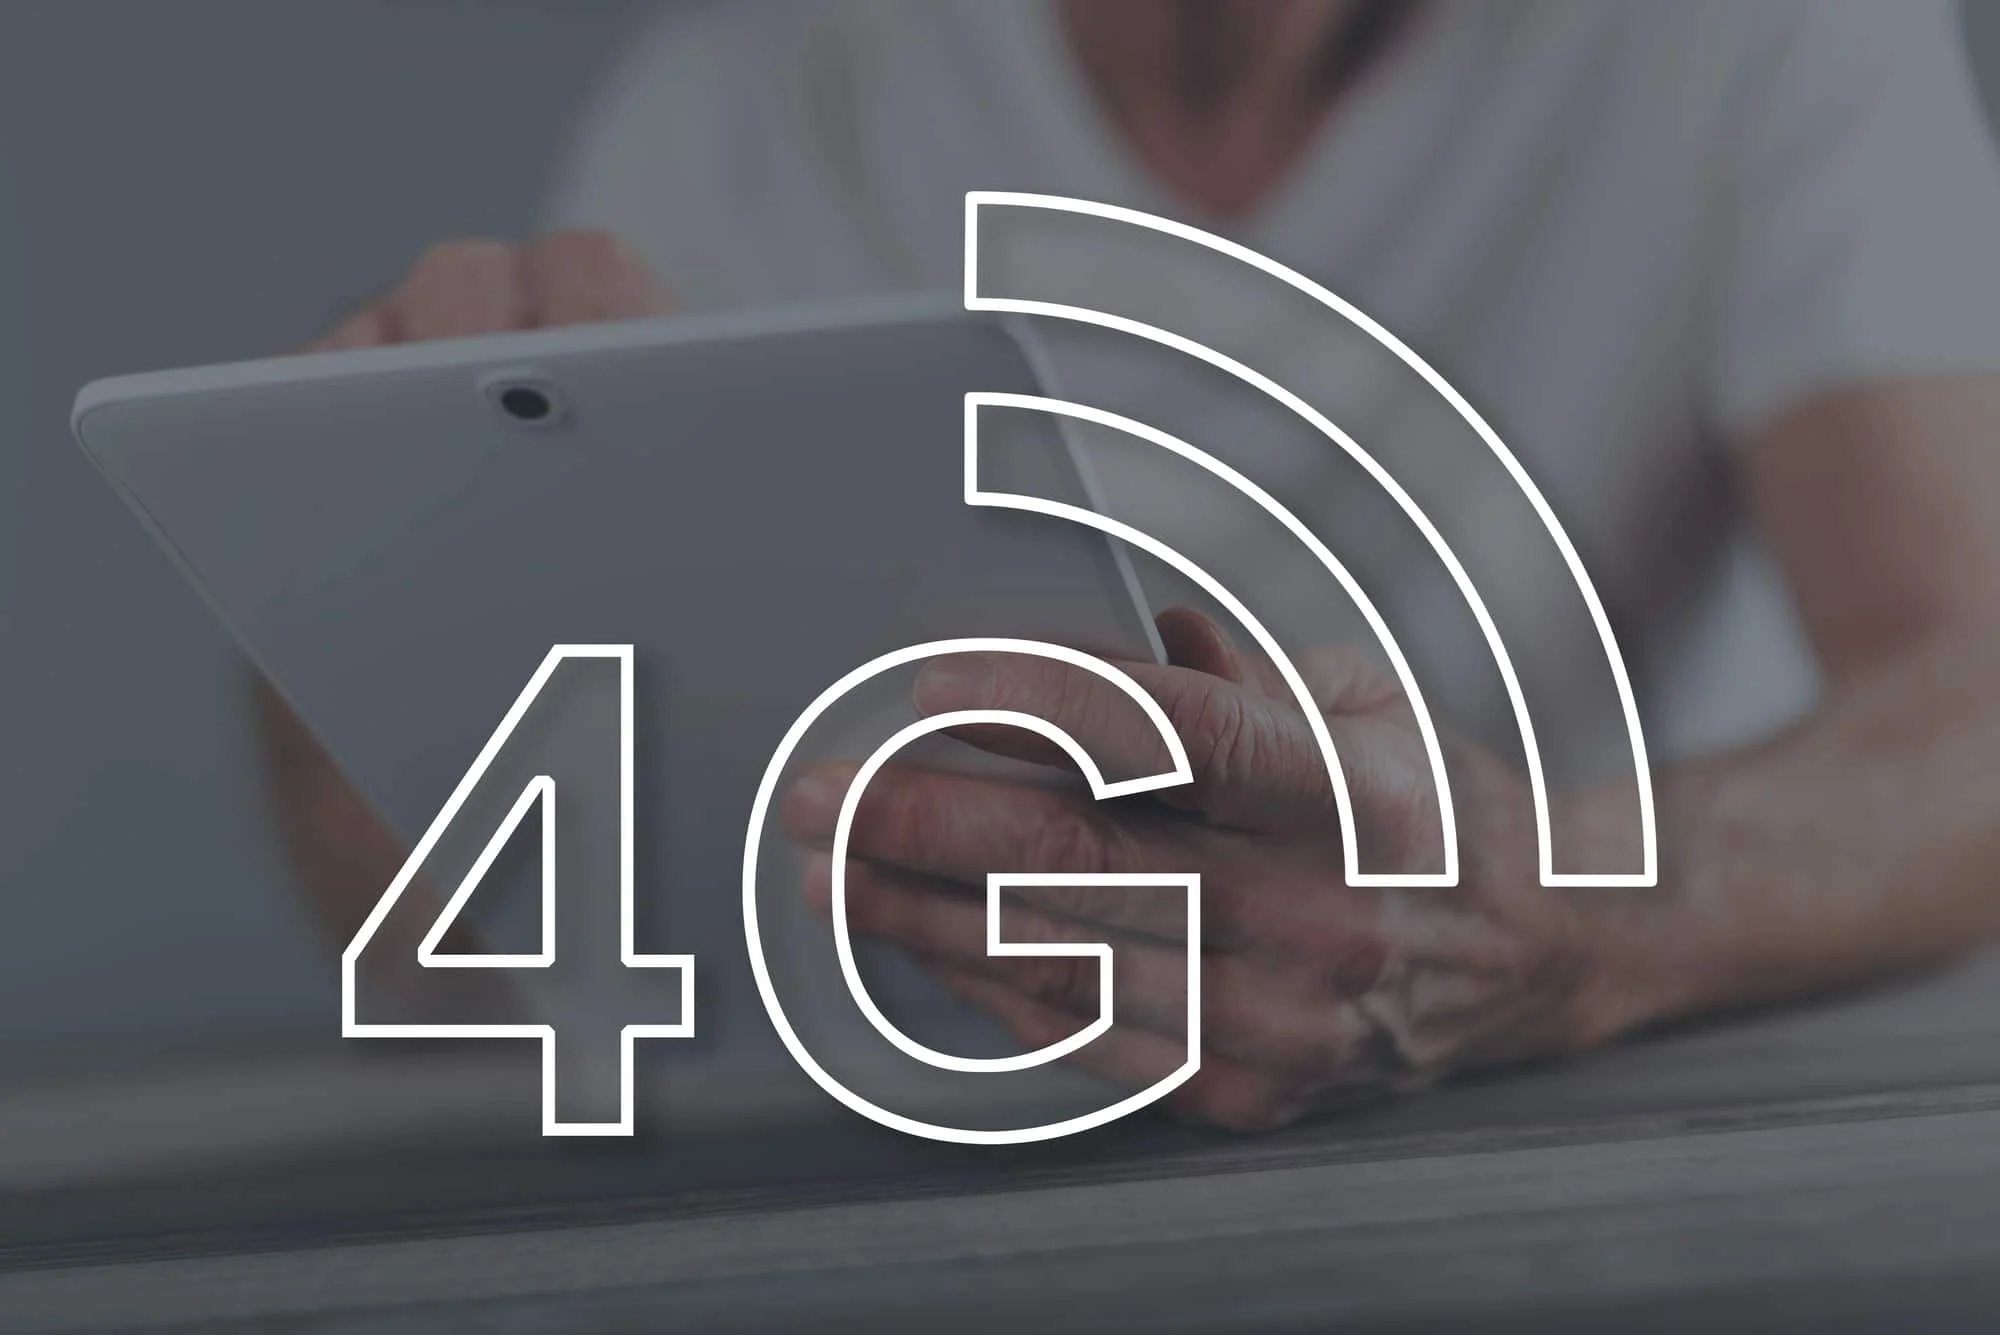 4g ağ kavramı. 5G'nin çevre üzerindeki avantajları ve dezavantajları nelerdir?